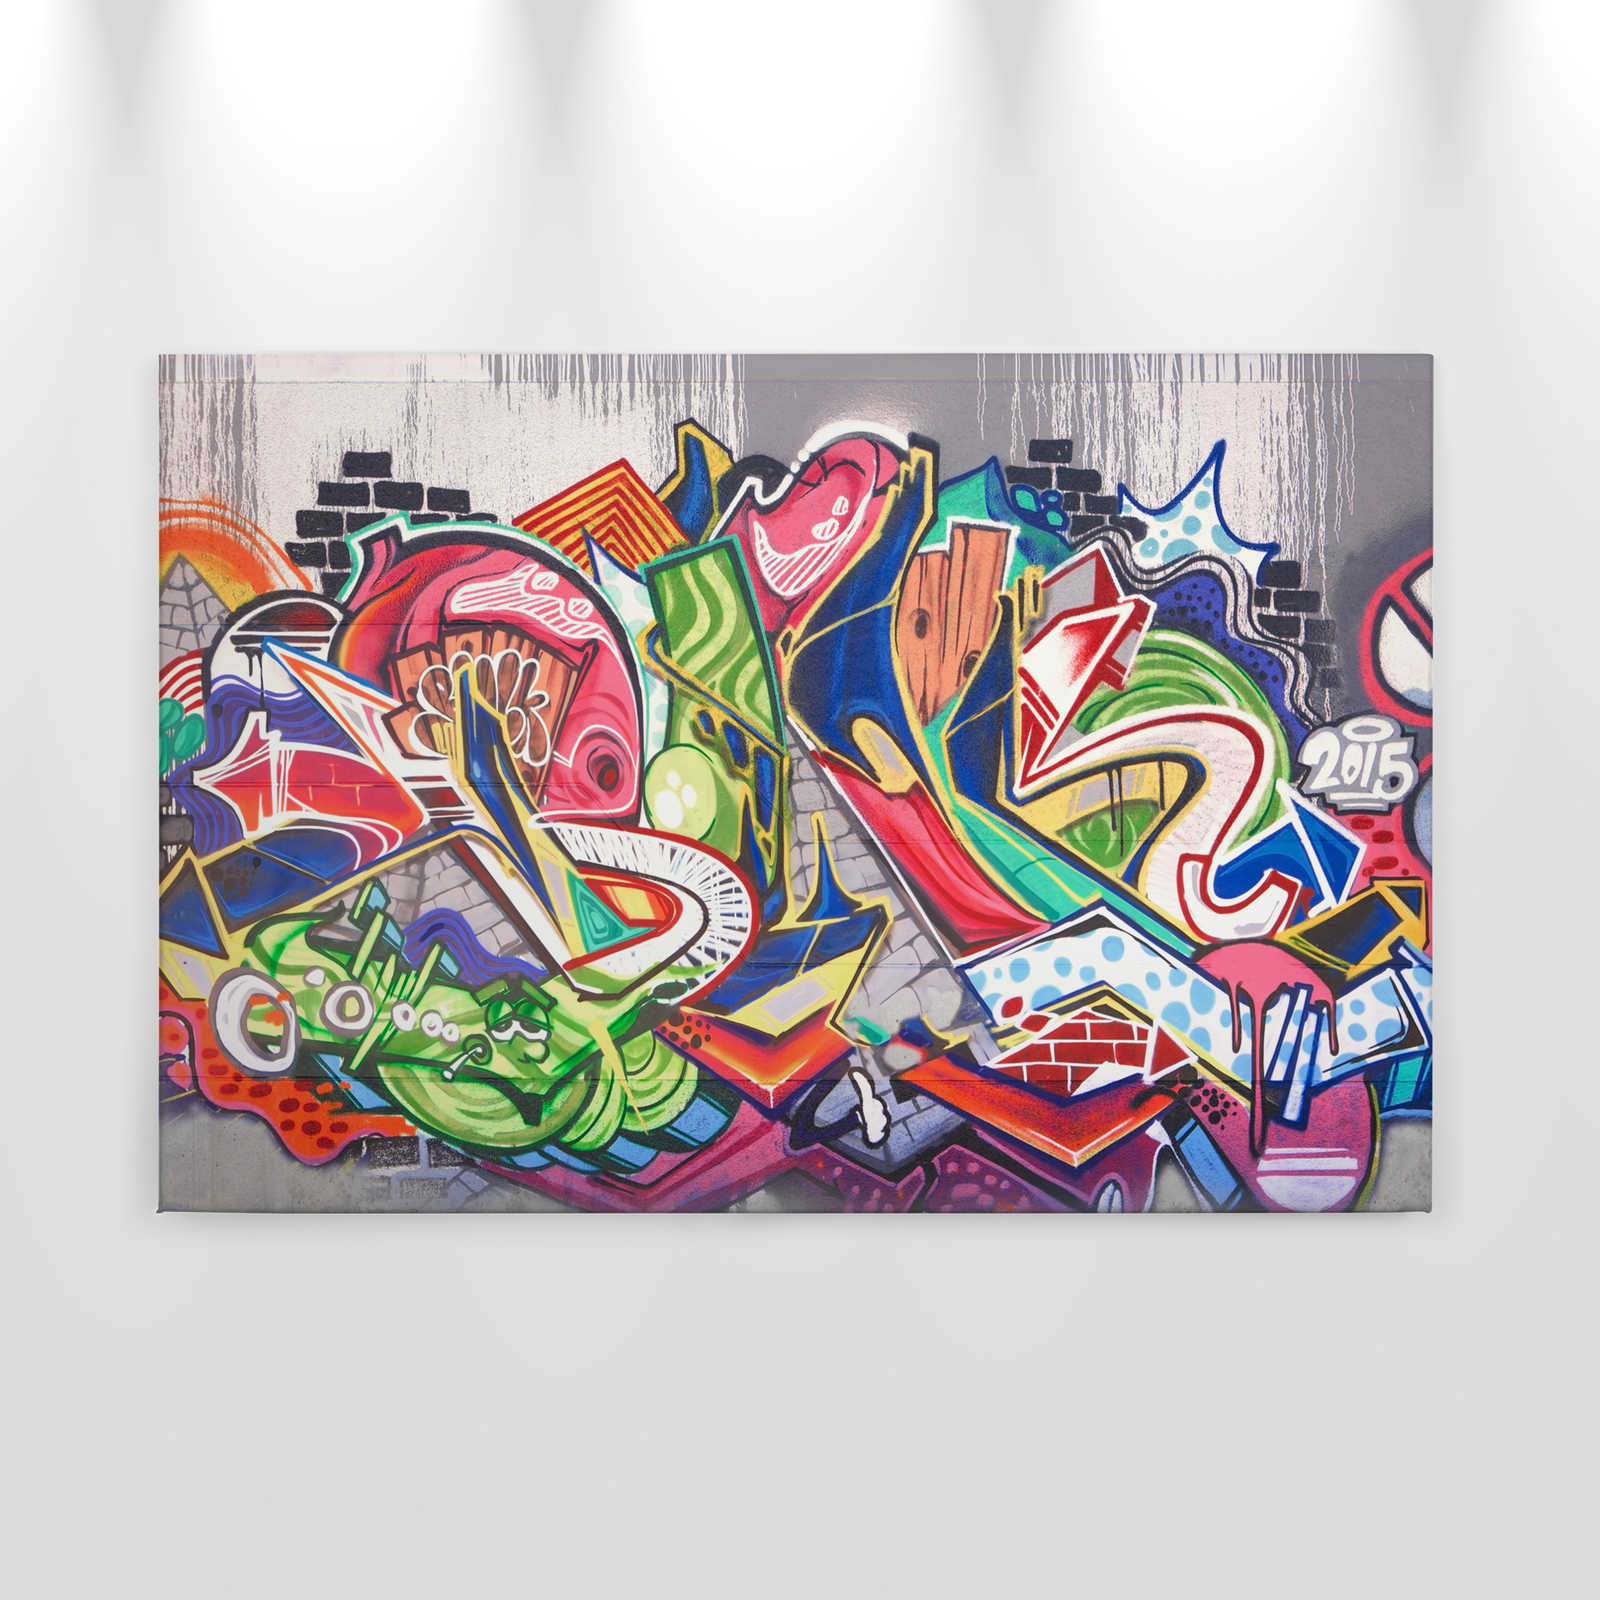             Urbane Graffiti Wand Leinwand – 0,90 m x 0,60 m
        